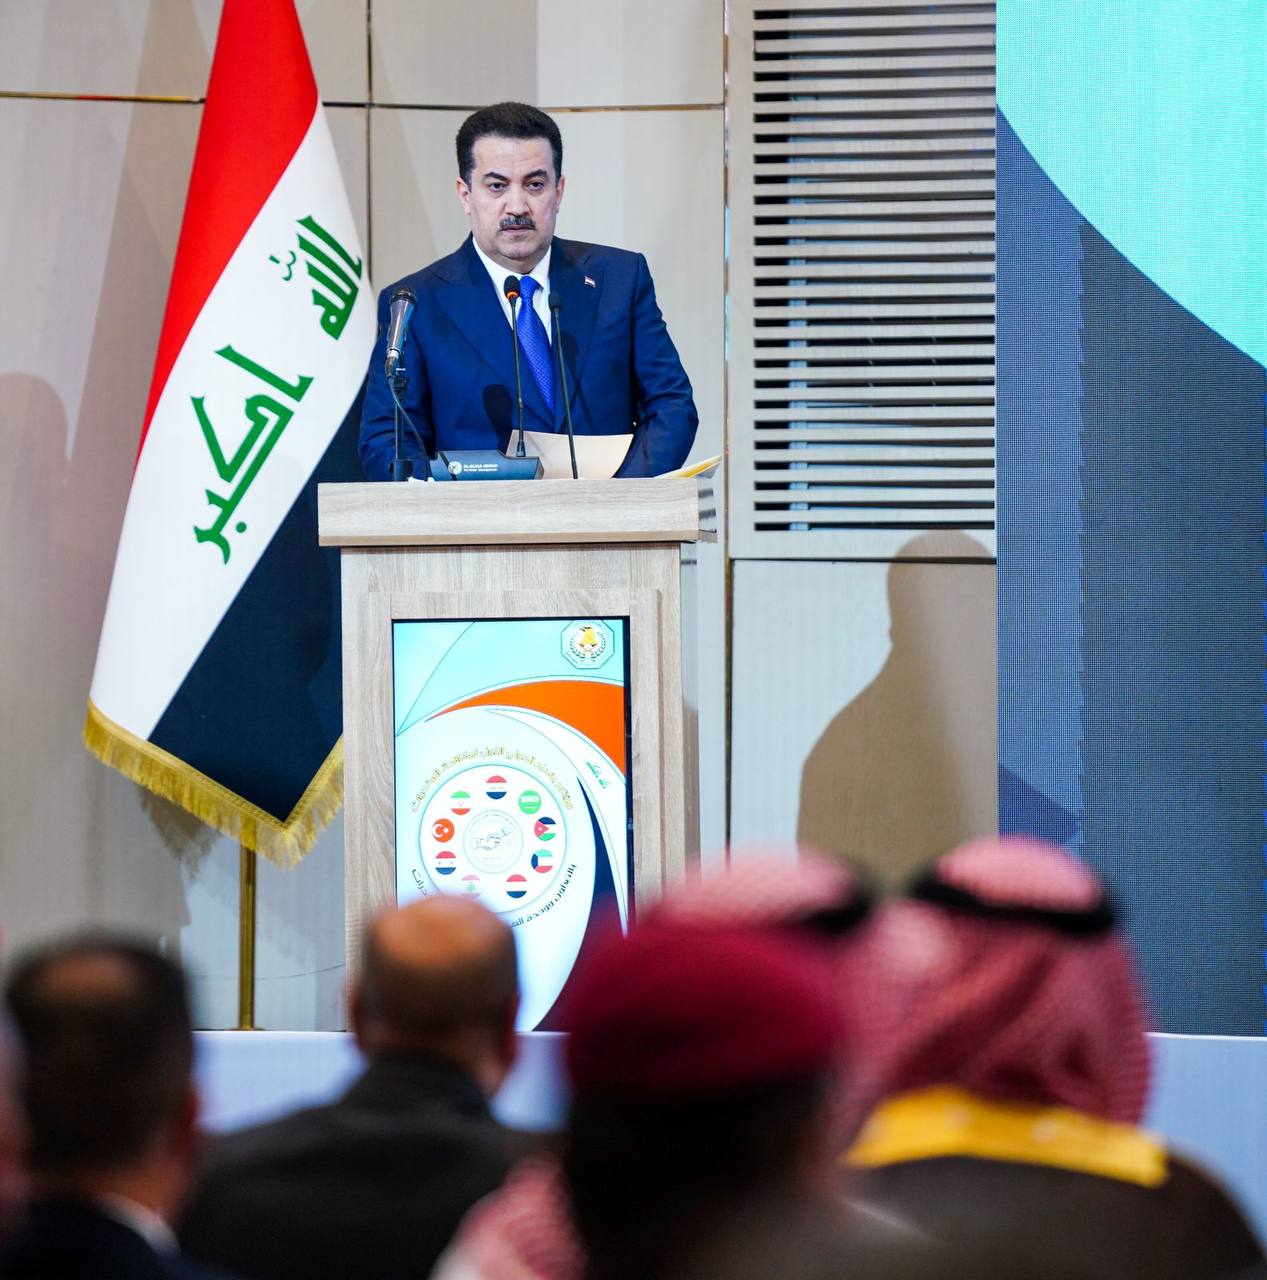 مؤتمر بغداد الدولي لمكافحة المخدرات